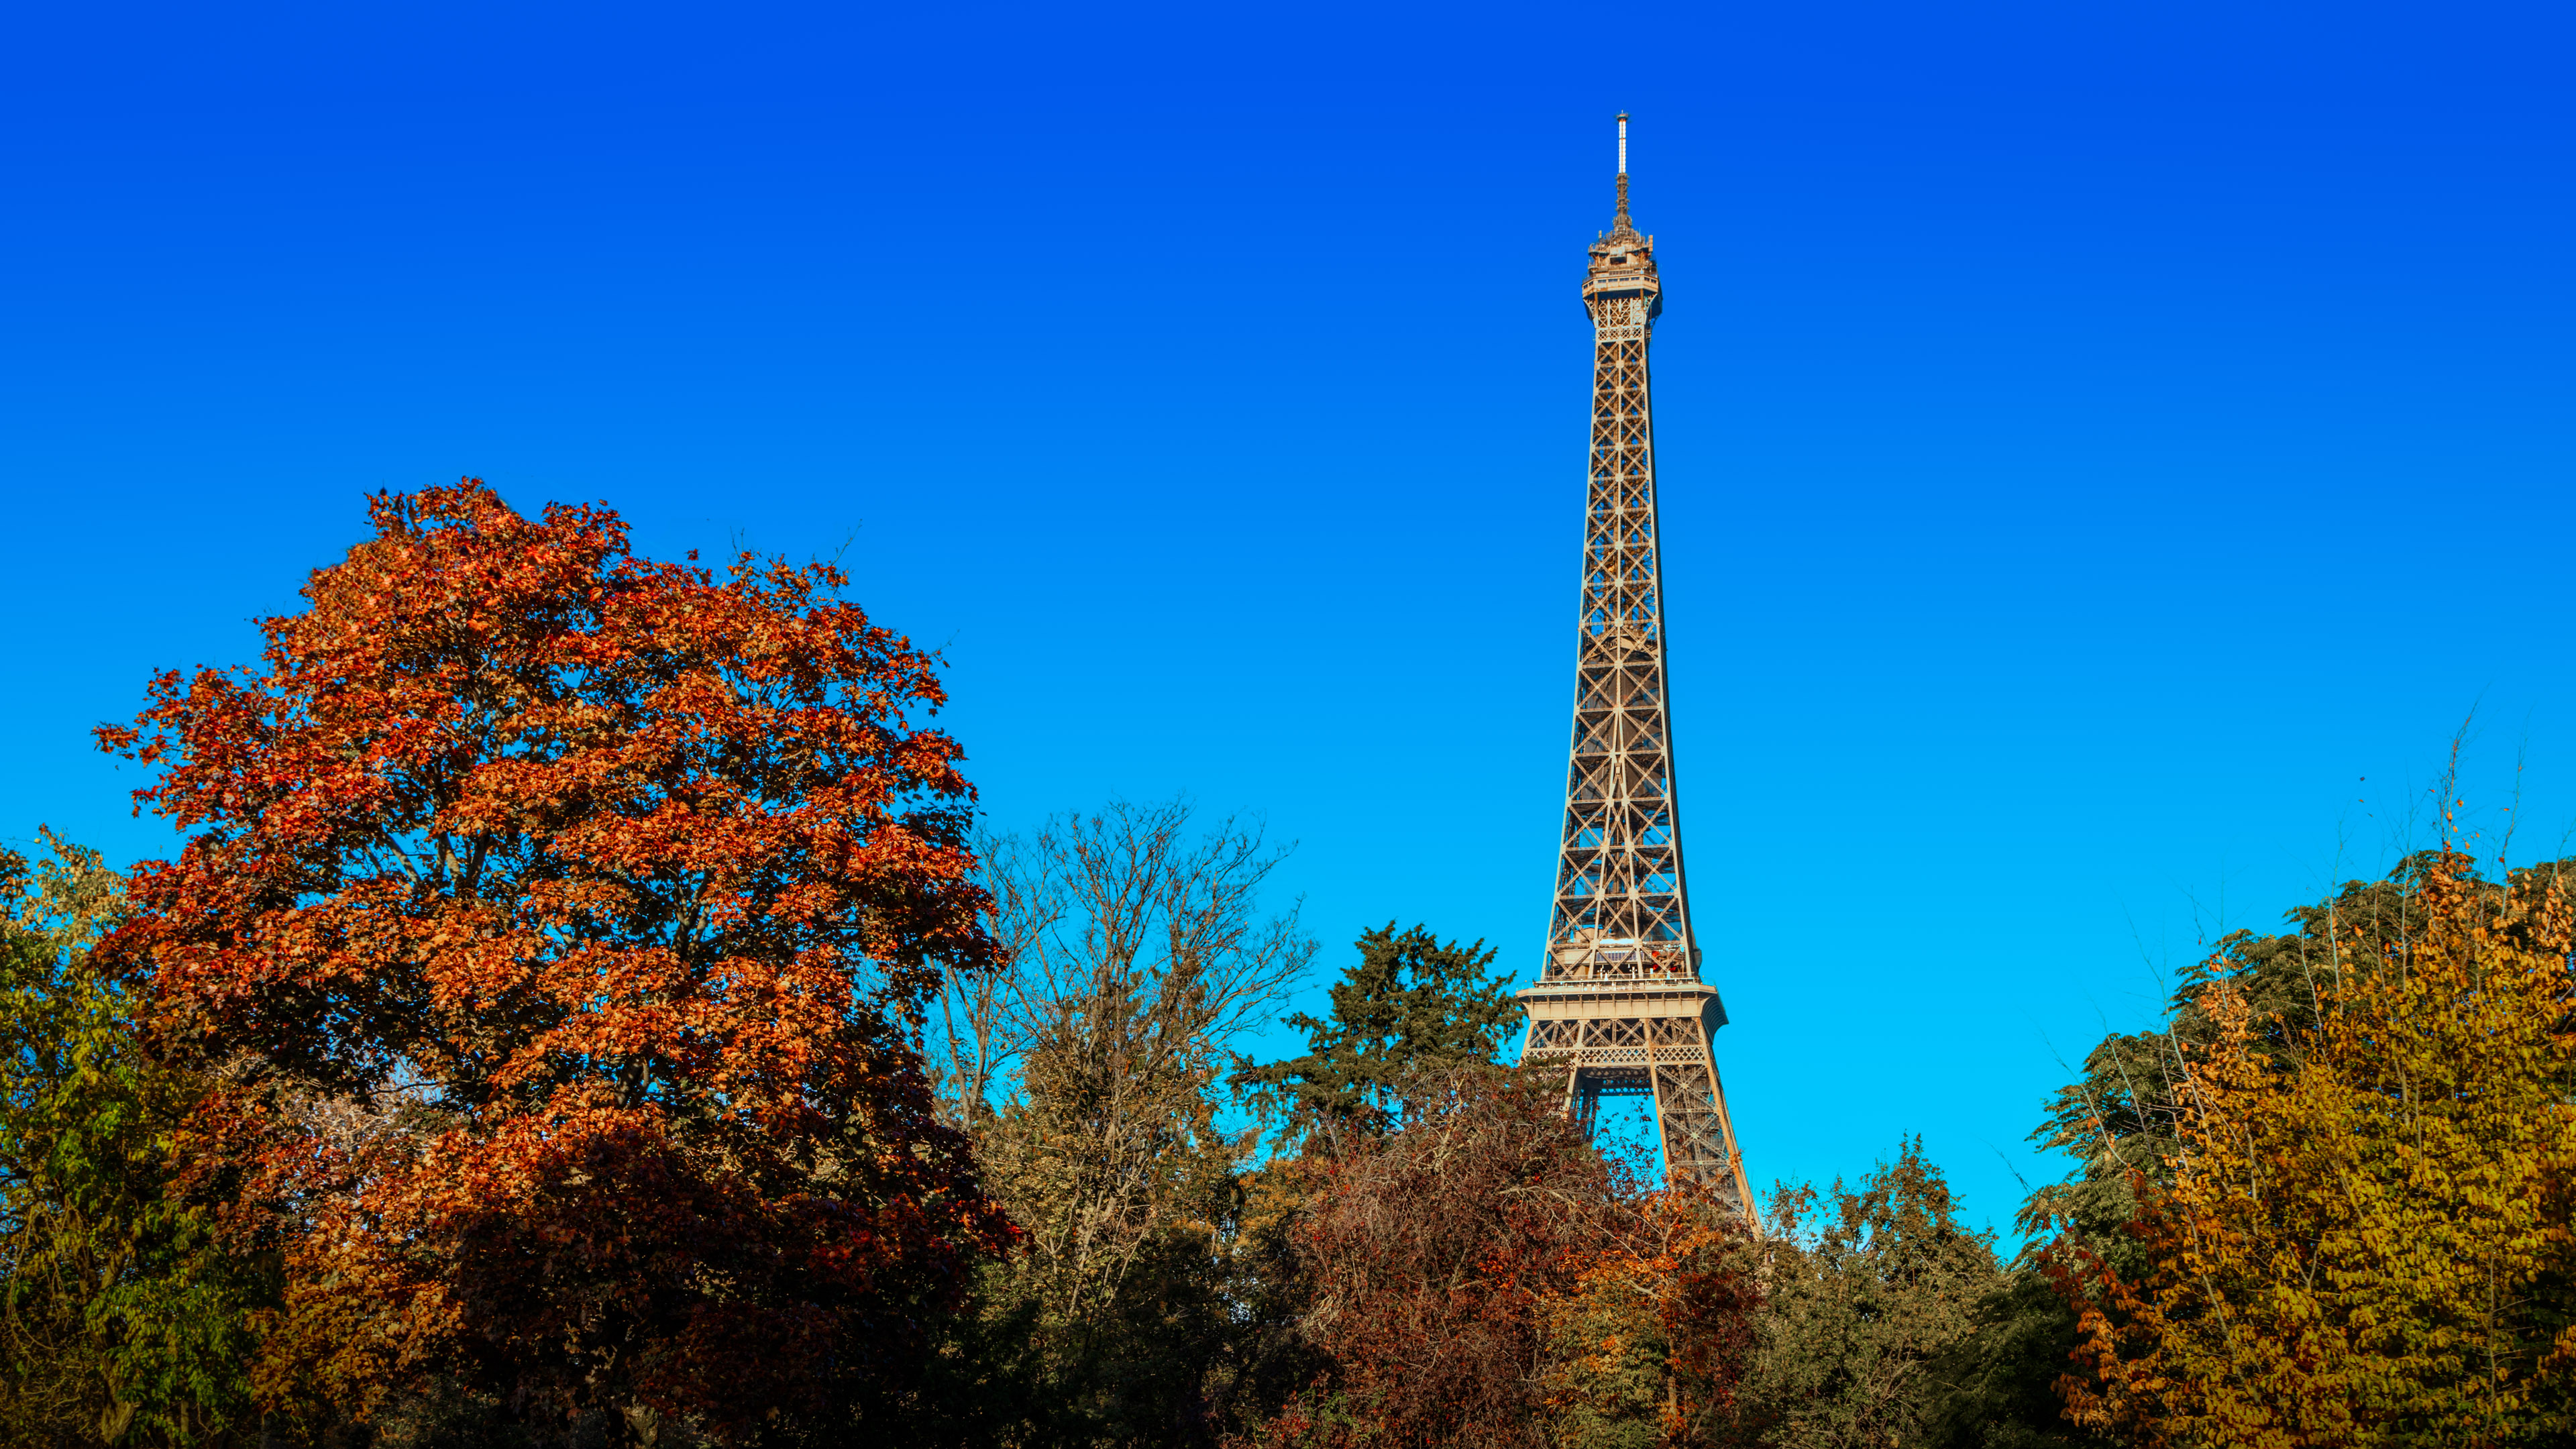 Transformez votre PC avec notre fond d'écran de bureau gratuit, mettant en valeur l'emblématique Tour Eiffel à Paris, symbole d'élégance et de génie architectural.